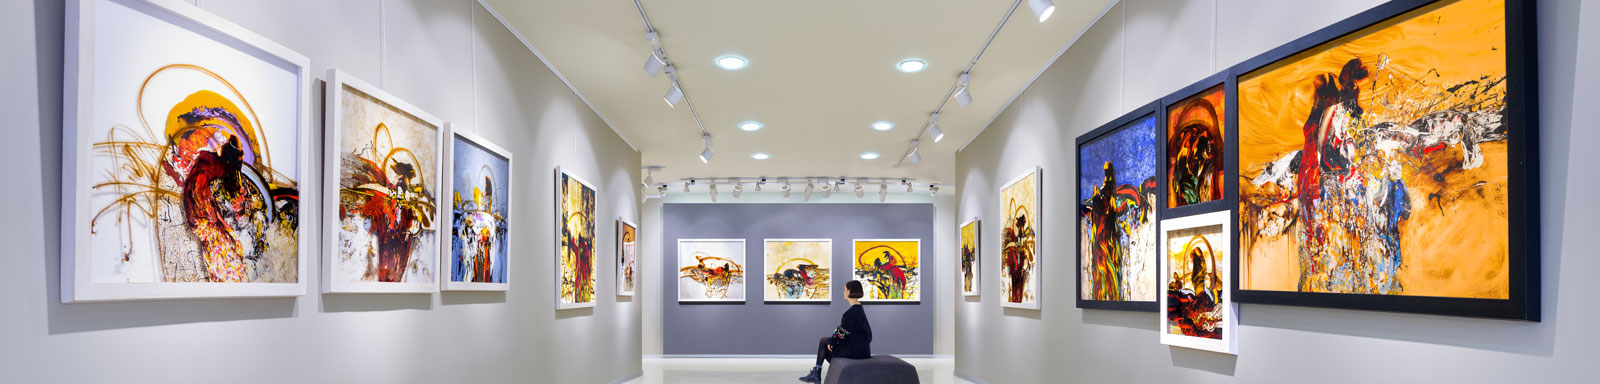 Museum of Contemtporary Art in Miami